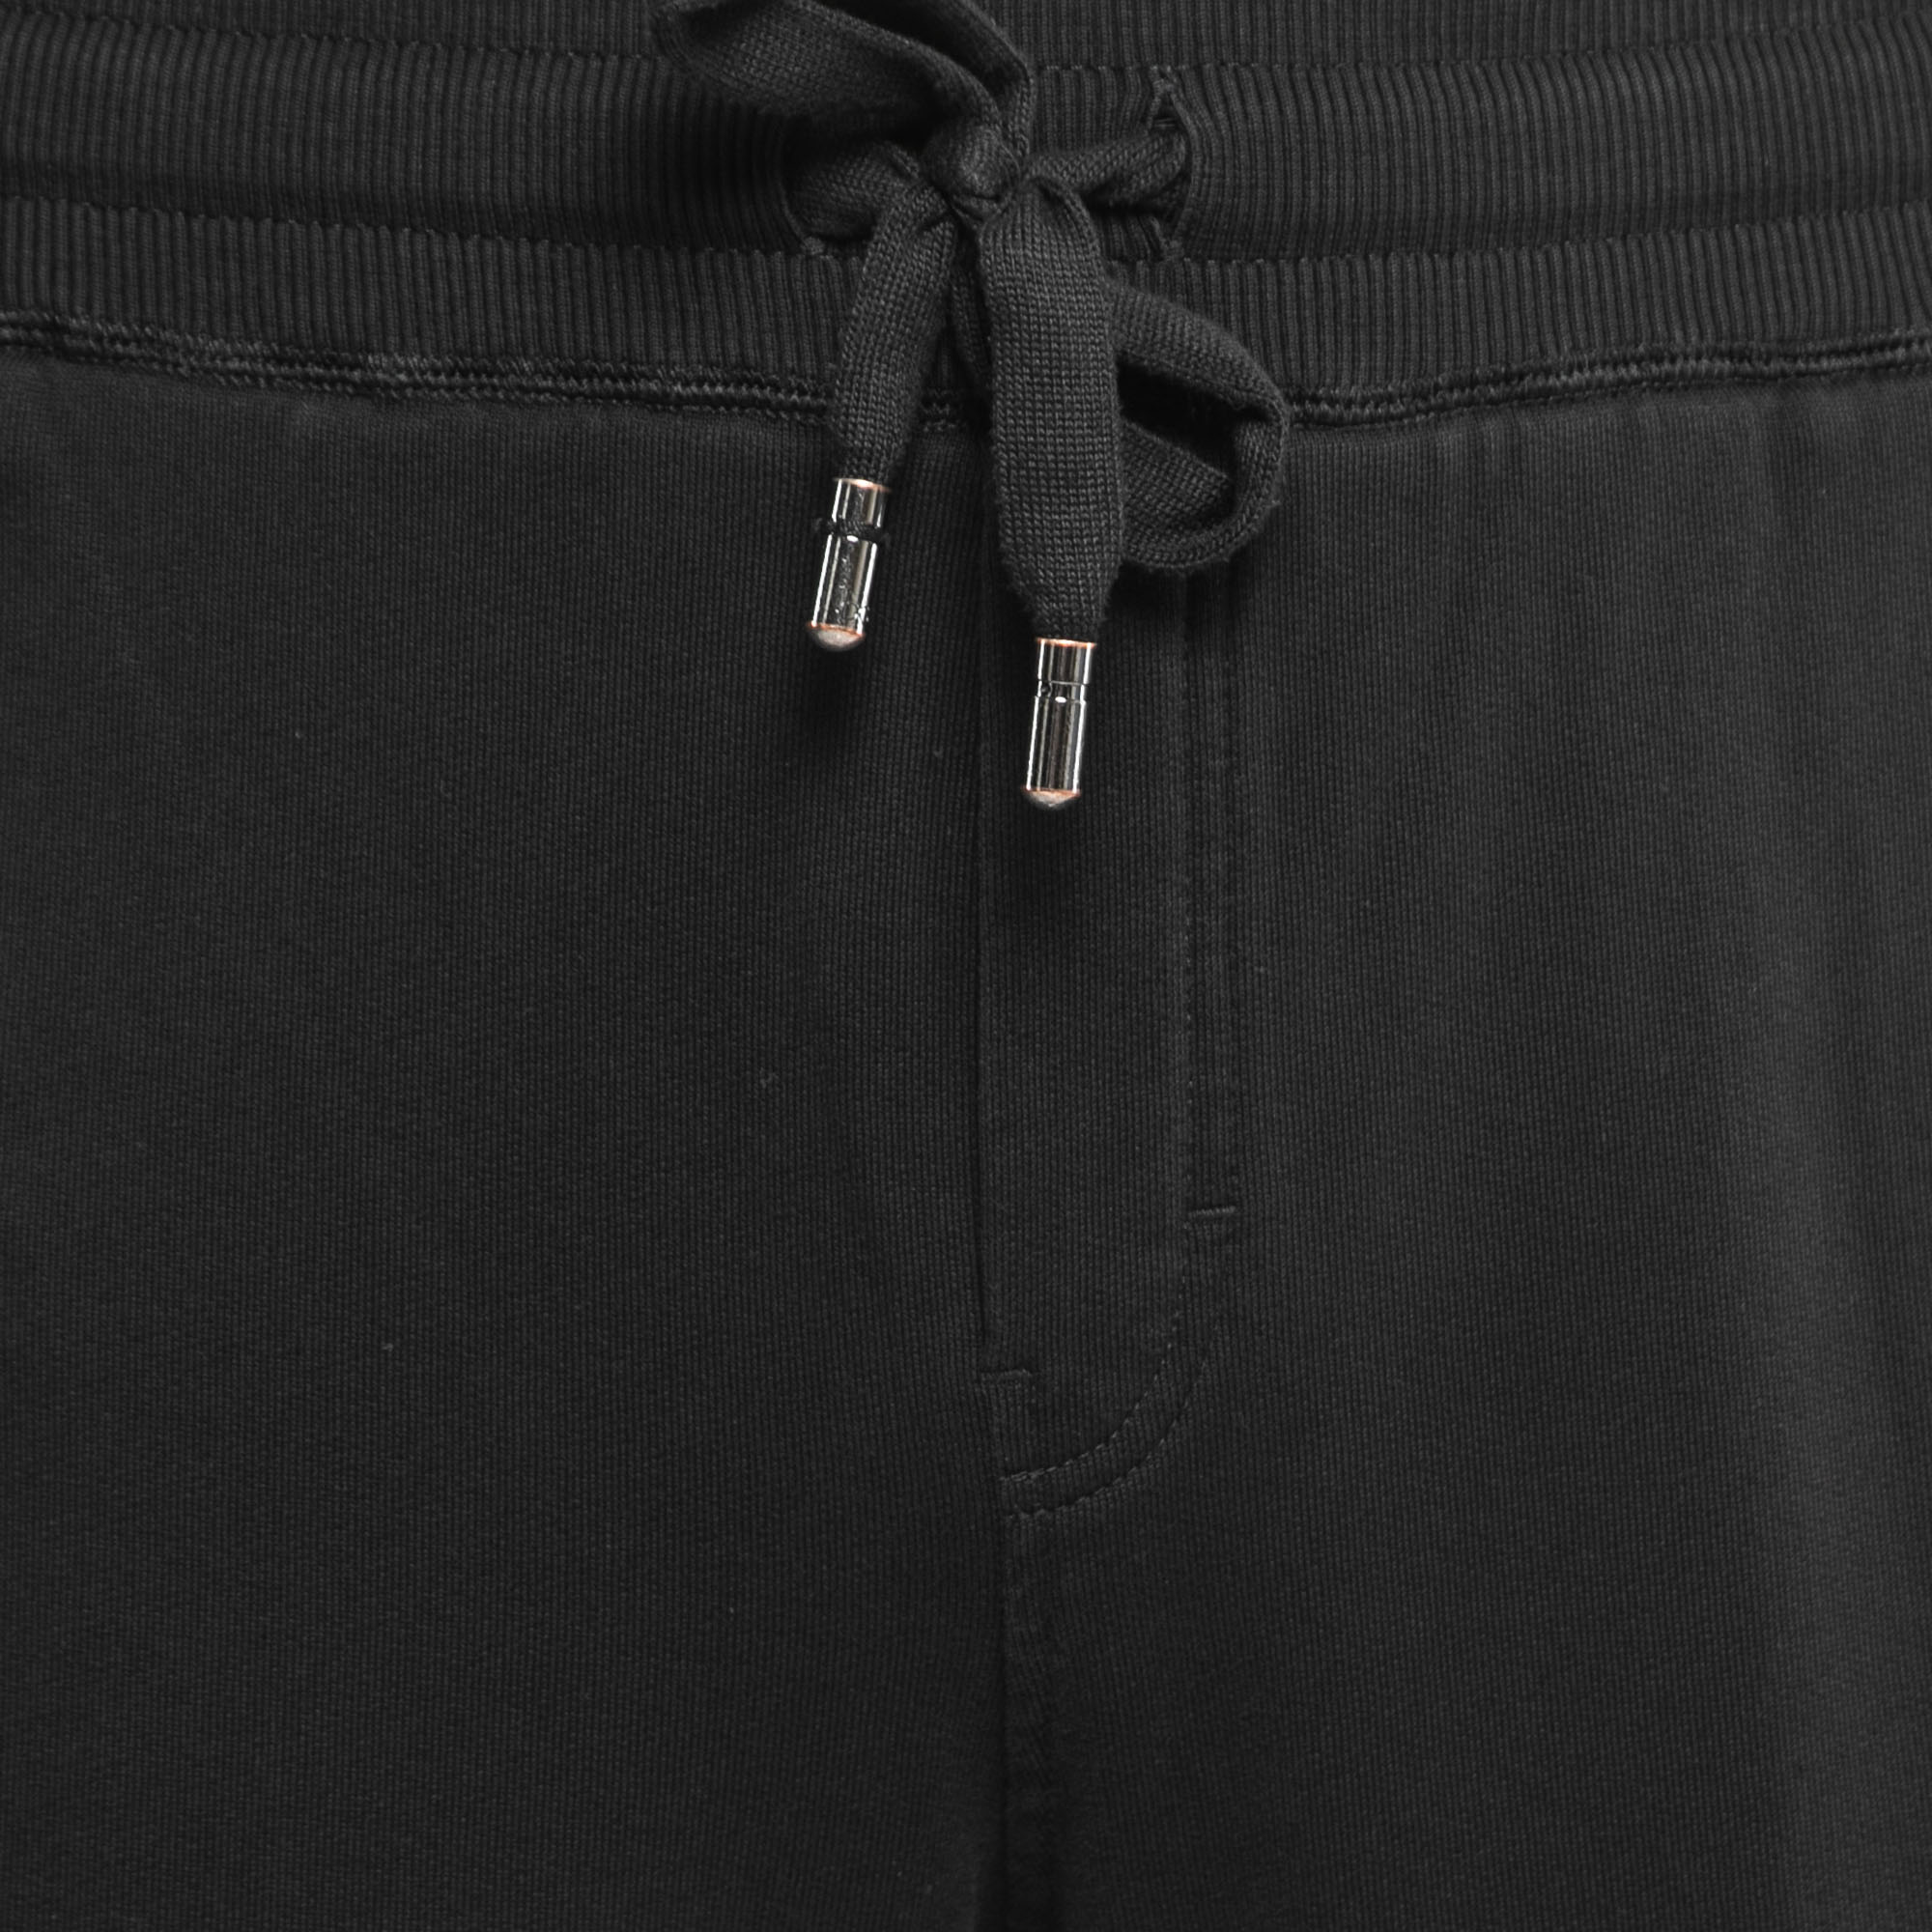 Dolce & Gabbana Black Cotton Knit Zip Detail Jogger Pants 5XL